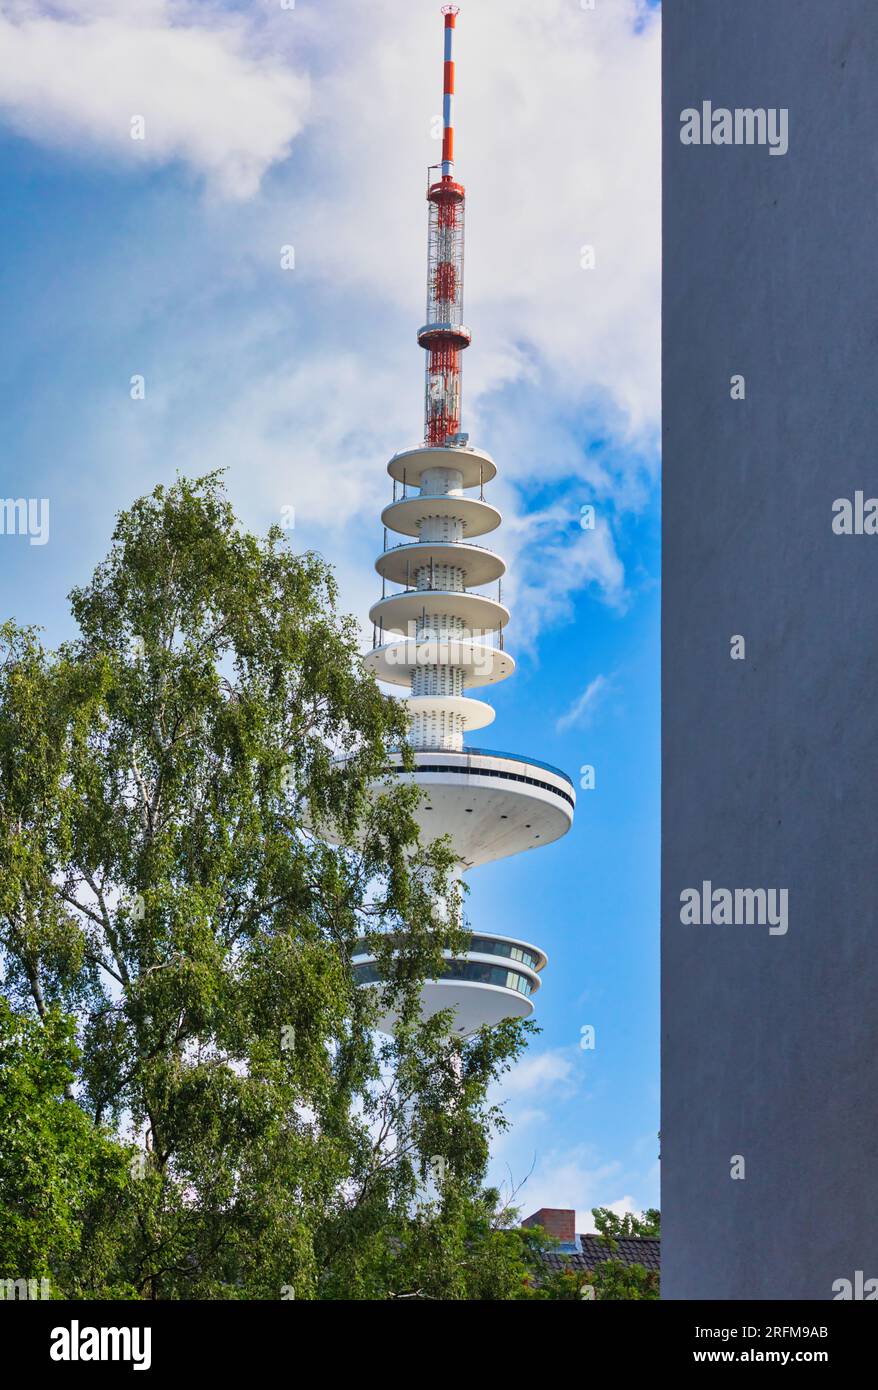 Tele-Michel (Torre Heinrich Hertz) la struttura più alta di Amburgo una torre di radiotelecomunicazioni costruita negli anni '1960, Amburgo, Germania Foto Stock